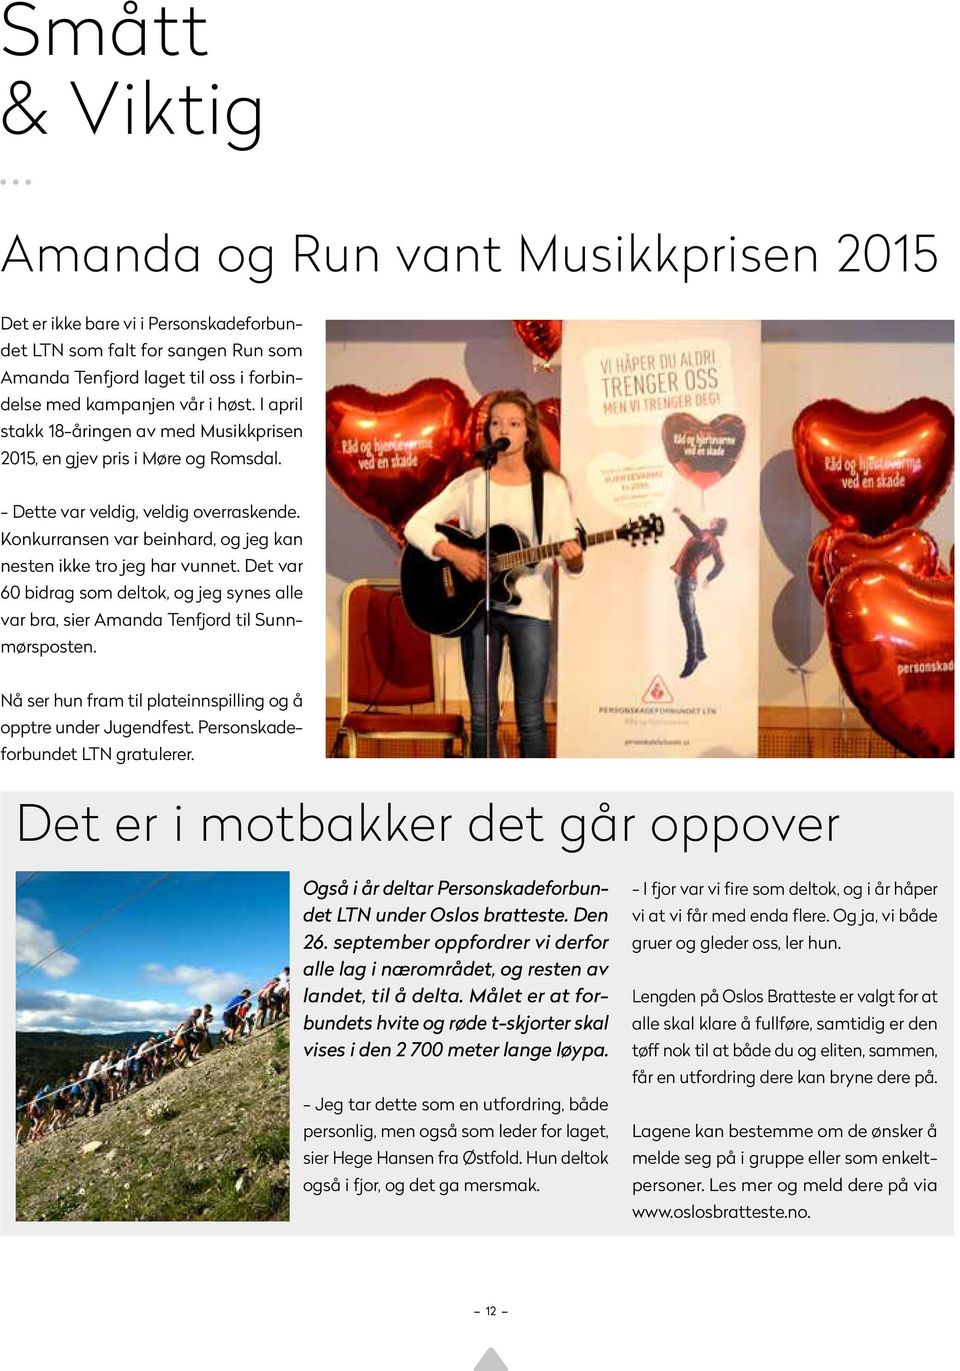 Det var 60 bidrag som deltok, og jeg synes alle var bra, sier Amanda Tenfjord til Sunnmørsposten. Nå ser hun fram til plateinnspilling og å opptre under Jugendfest.